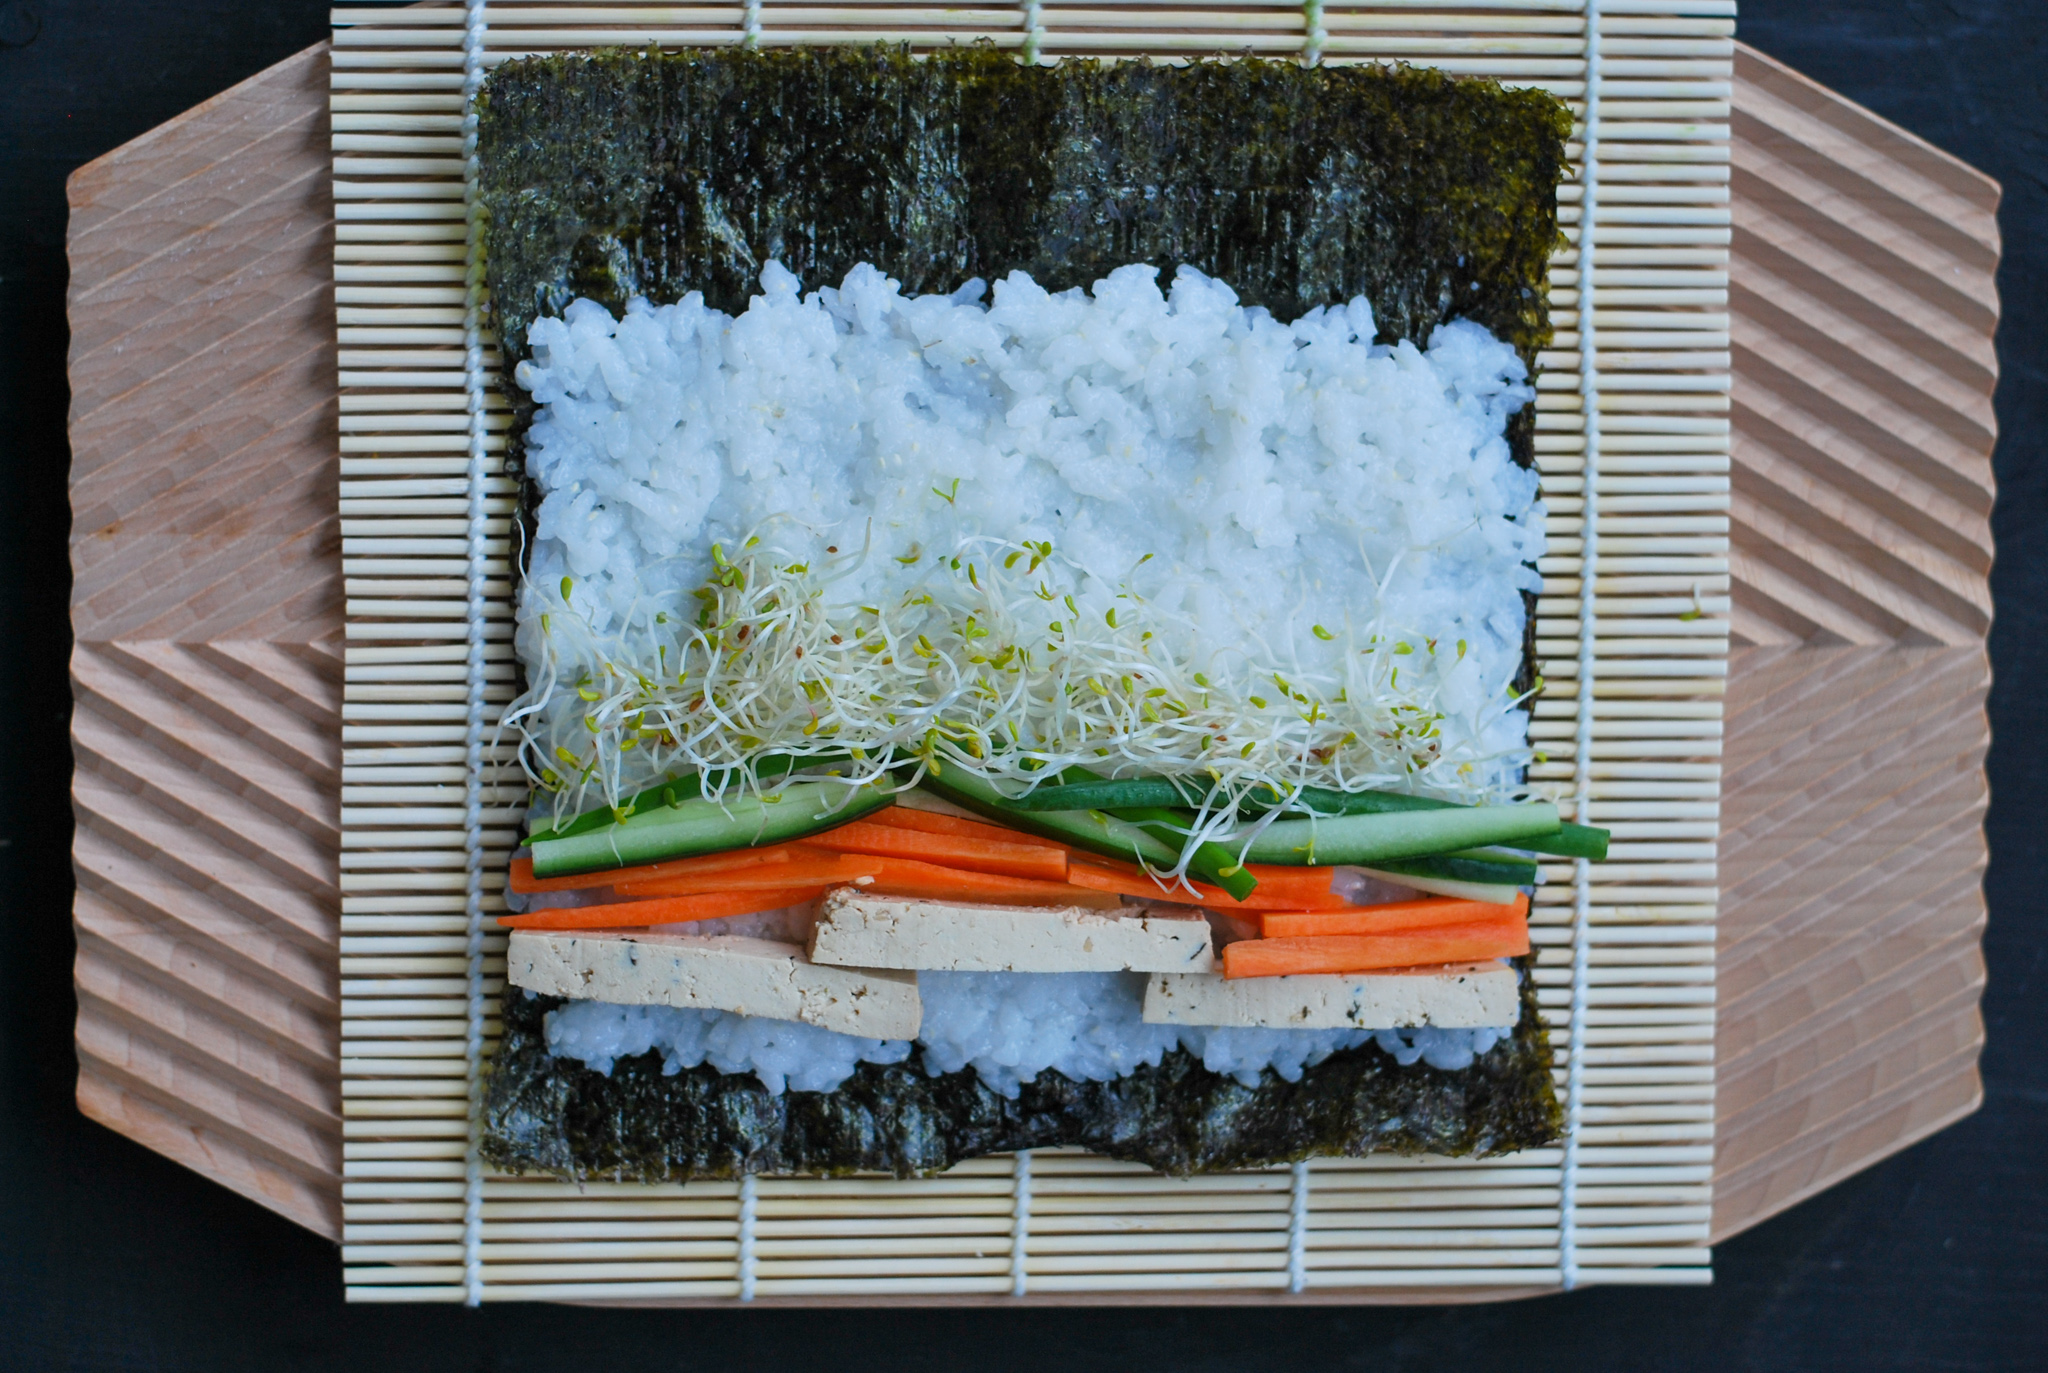 Kuvassa on bambumaton päällä rullaamaton makirulla, jossa on riisiä, tofua, porkkanaa, kurkkua ja sinimailasen ituja.